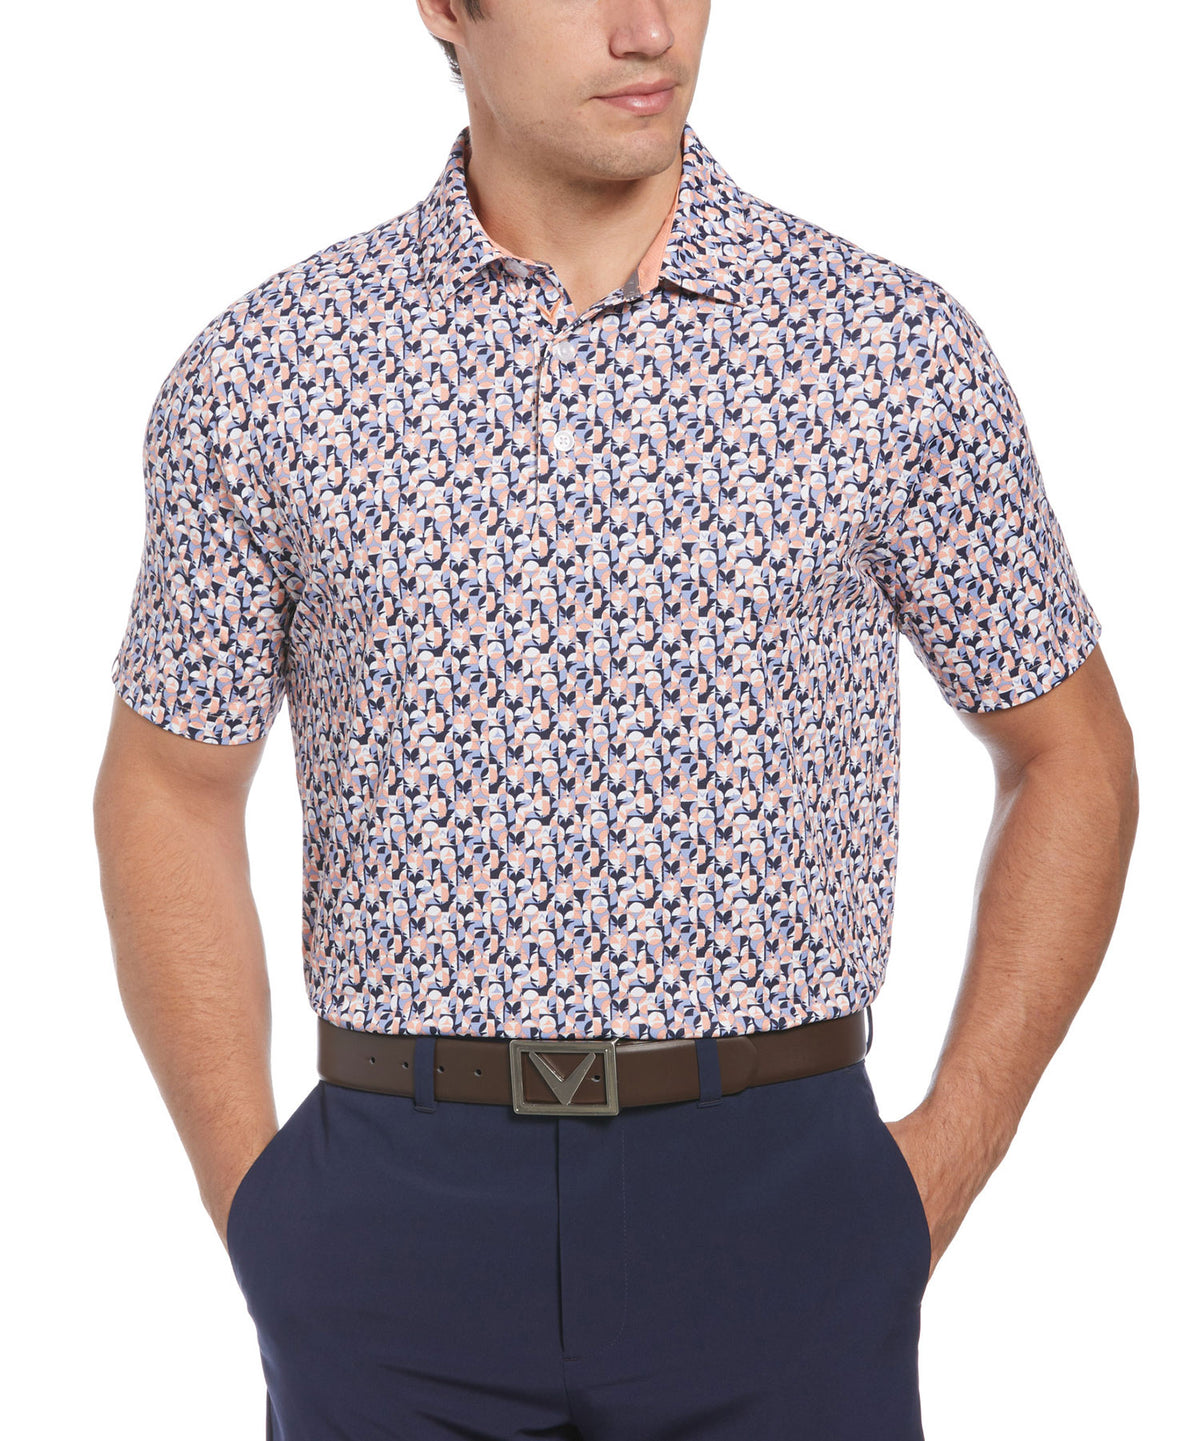 Callaway Short Sleeve Abstract Print Polo Knit Shirt, Big & Tall